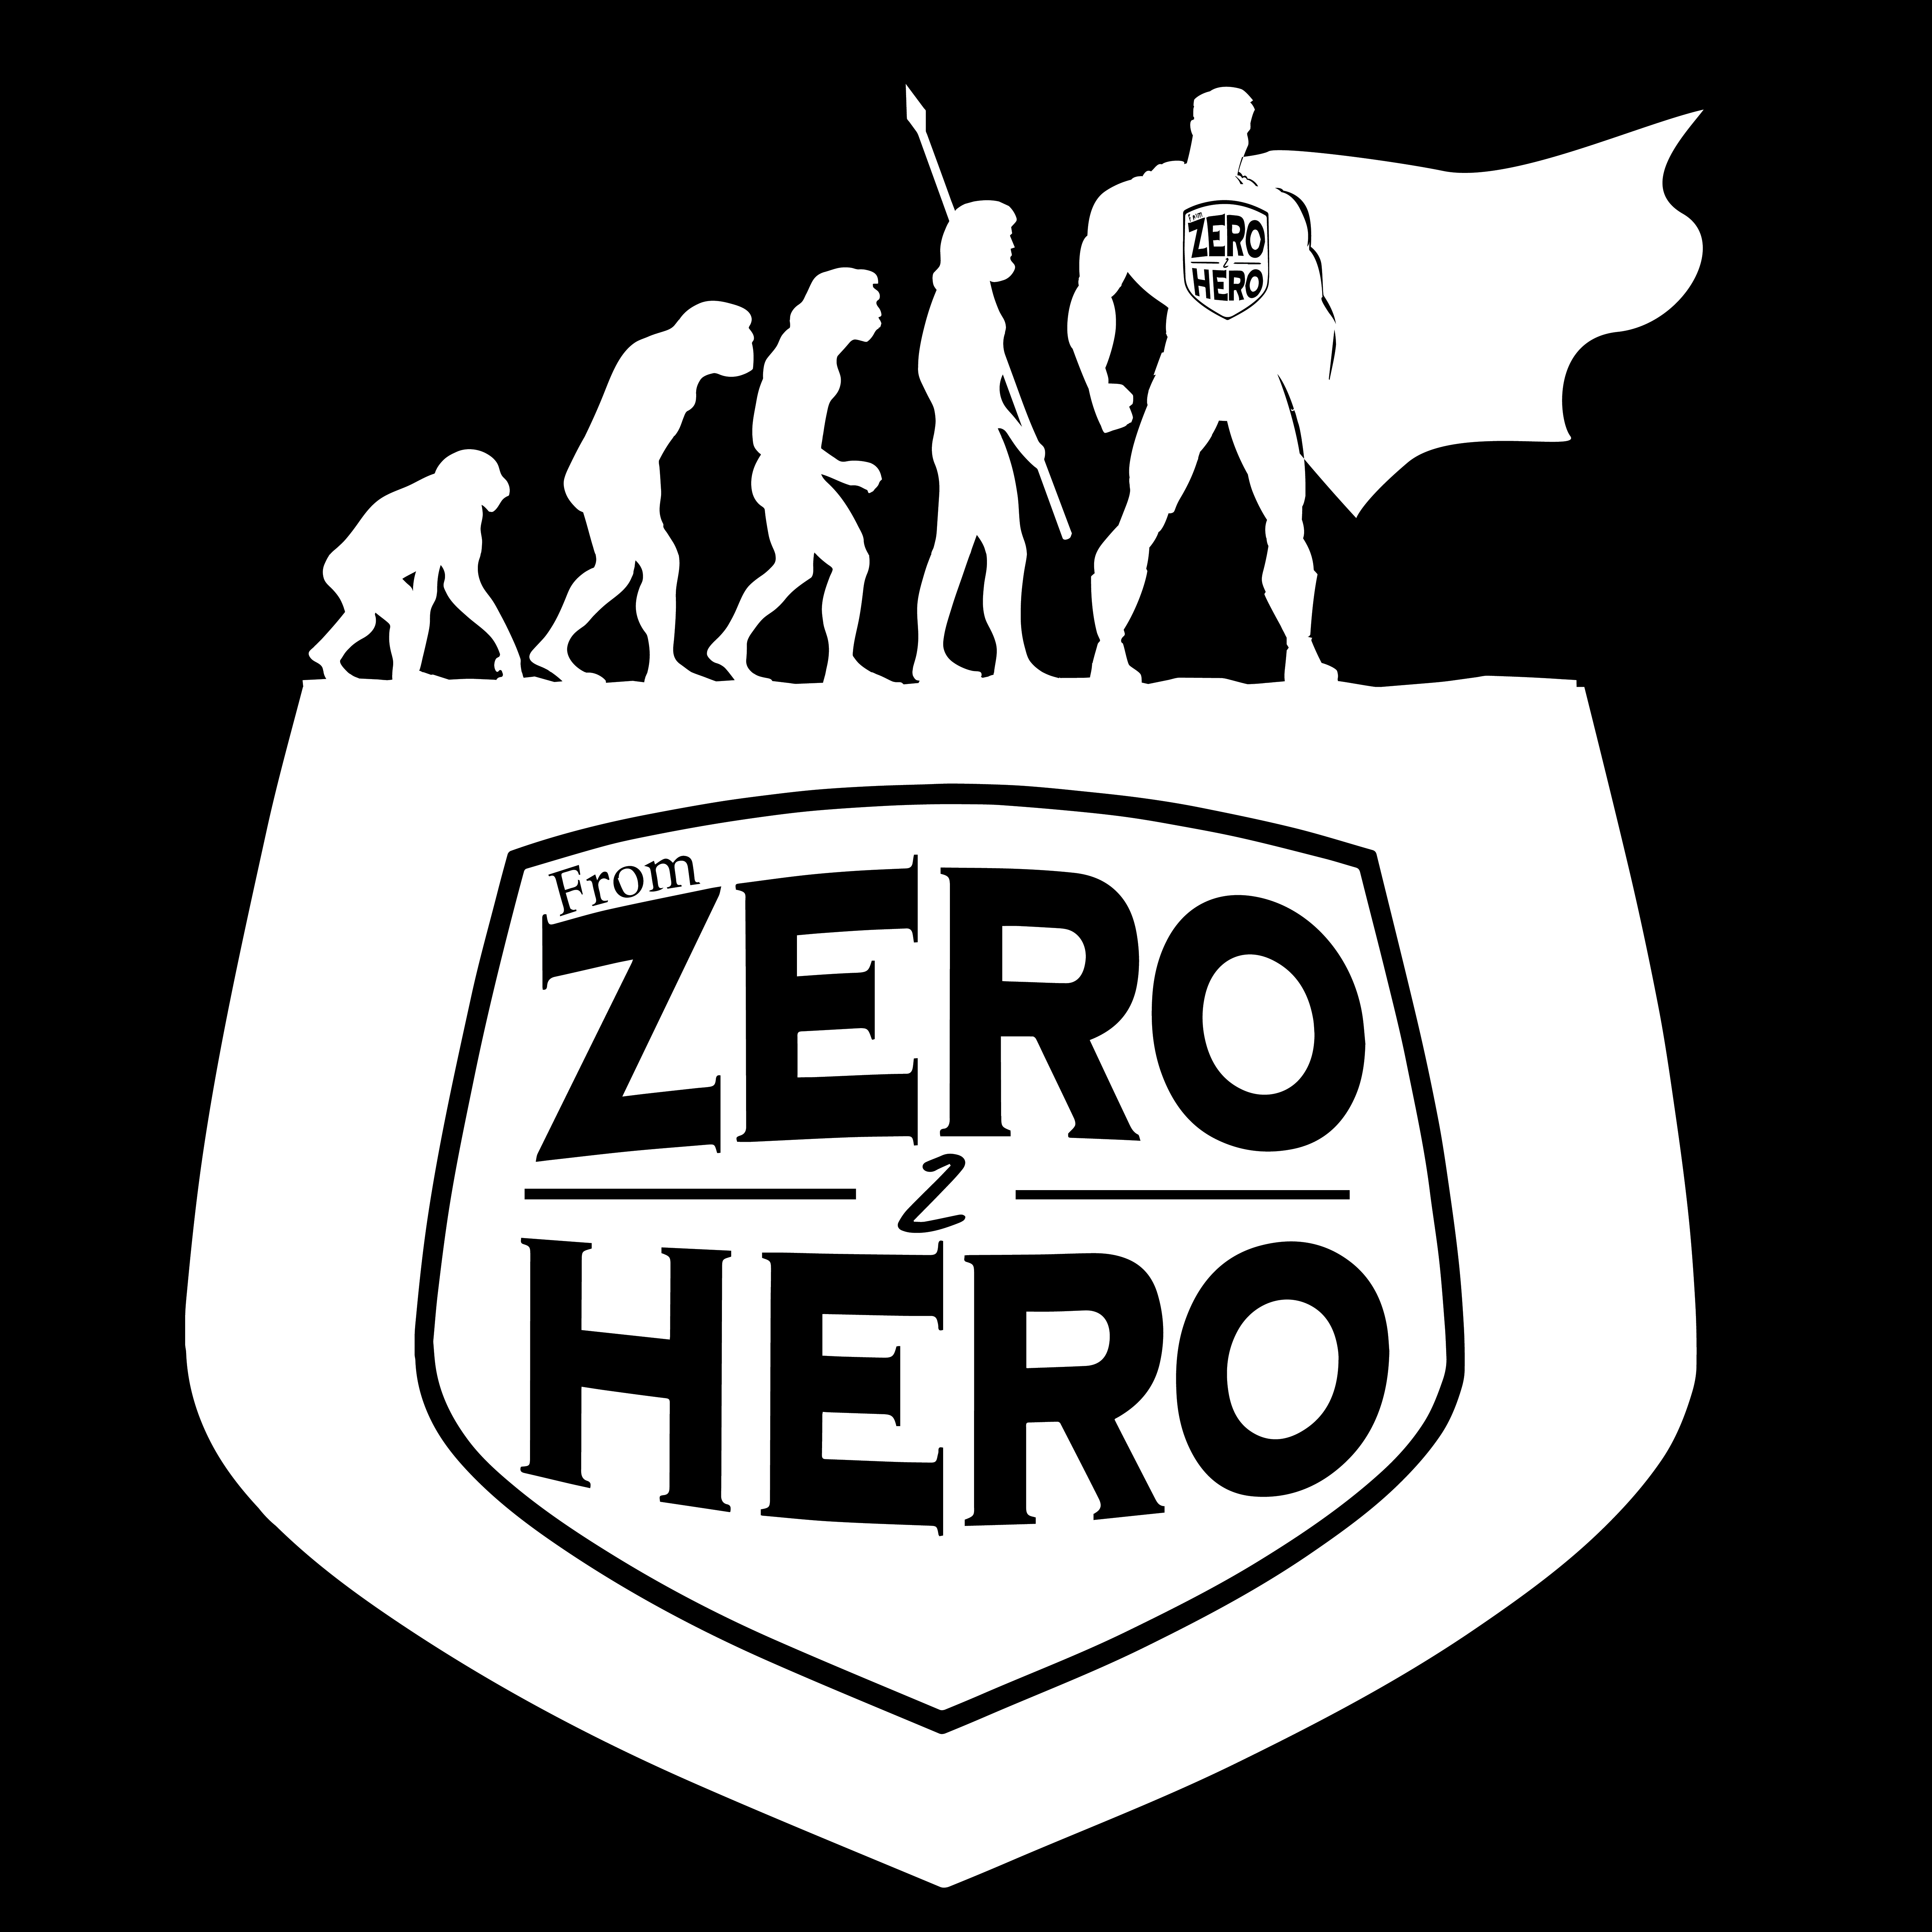 Zero to hero shawn alff